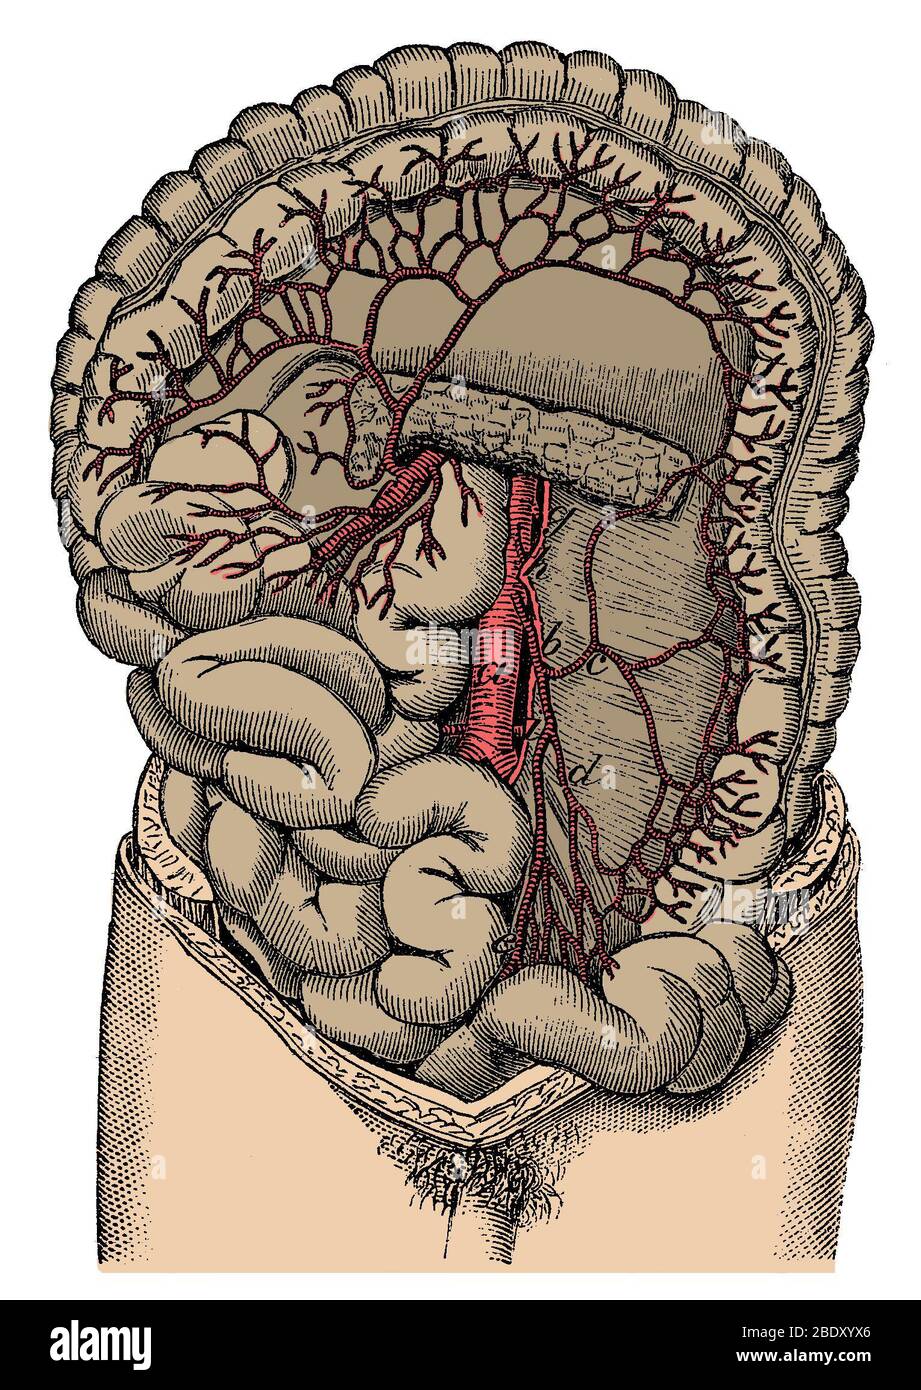 Inferior mesenteric Artery and the Aorta Stock Photo